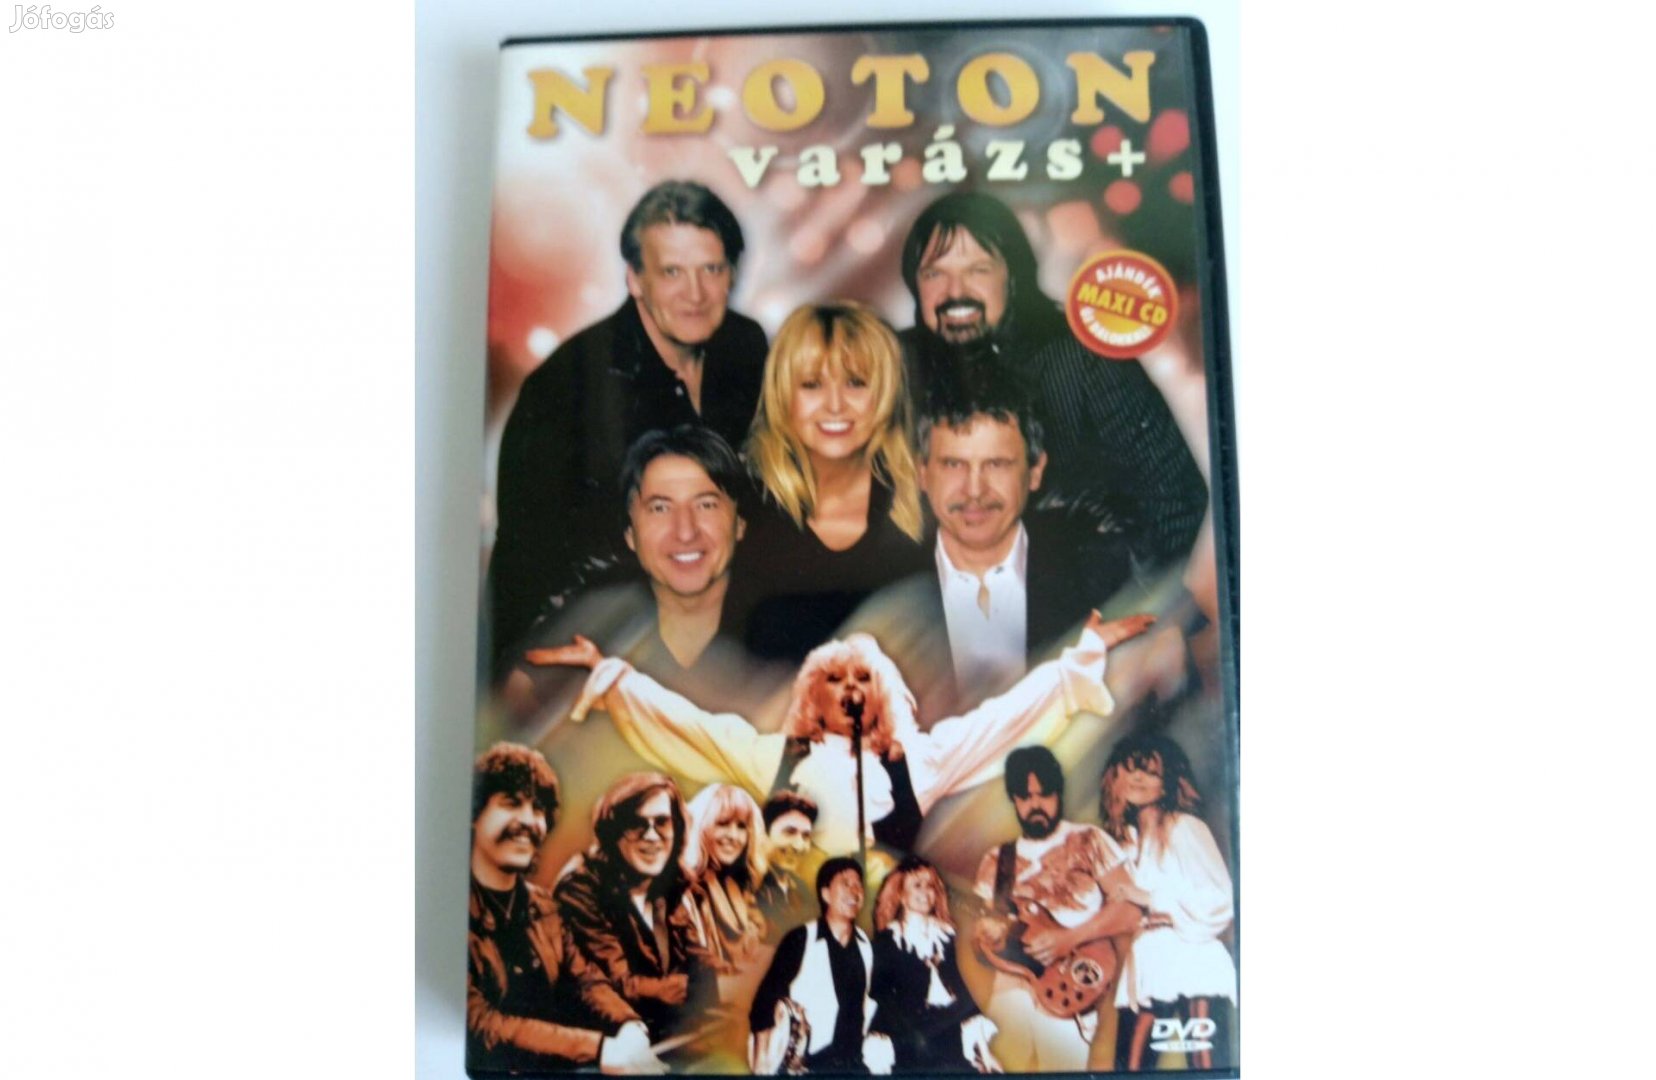 Neoton familia: Neoton varázs DVD + Maxi CD